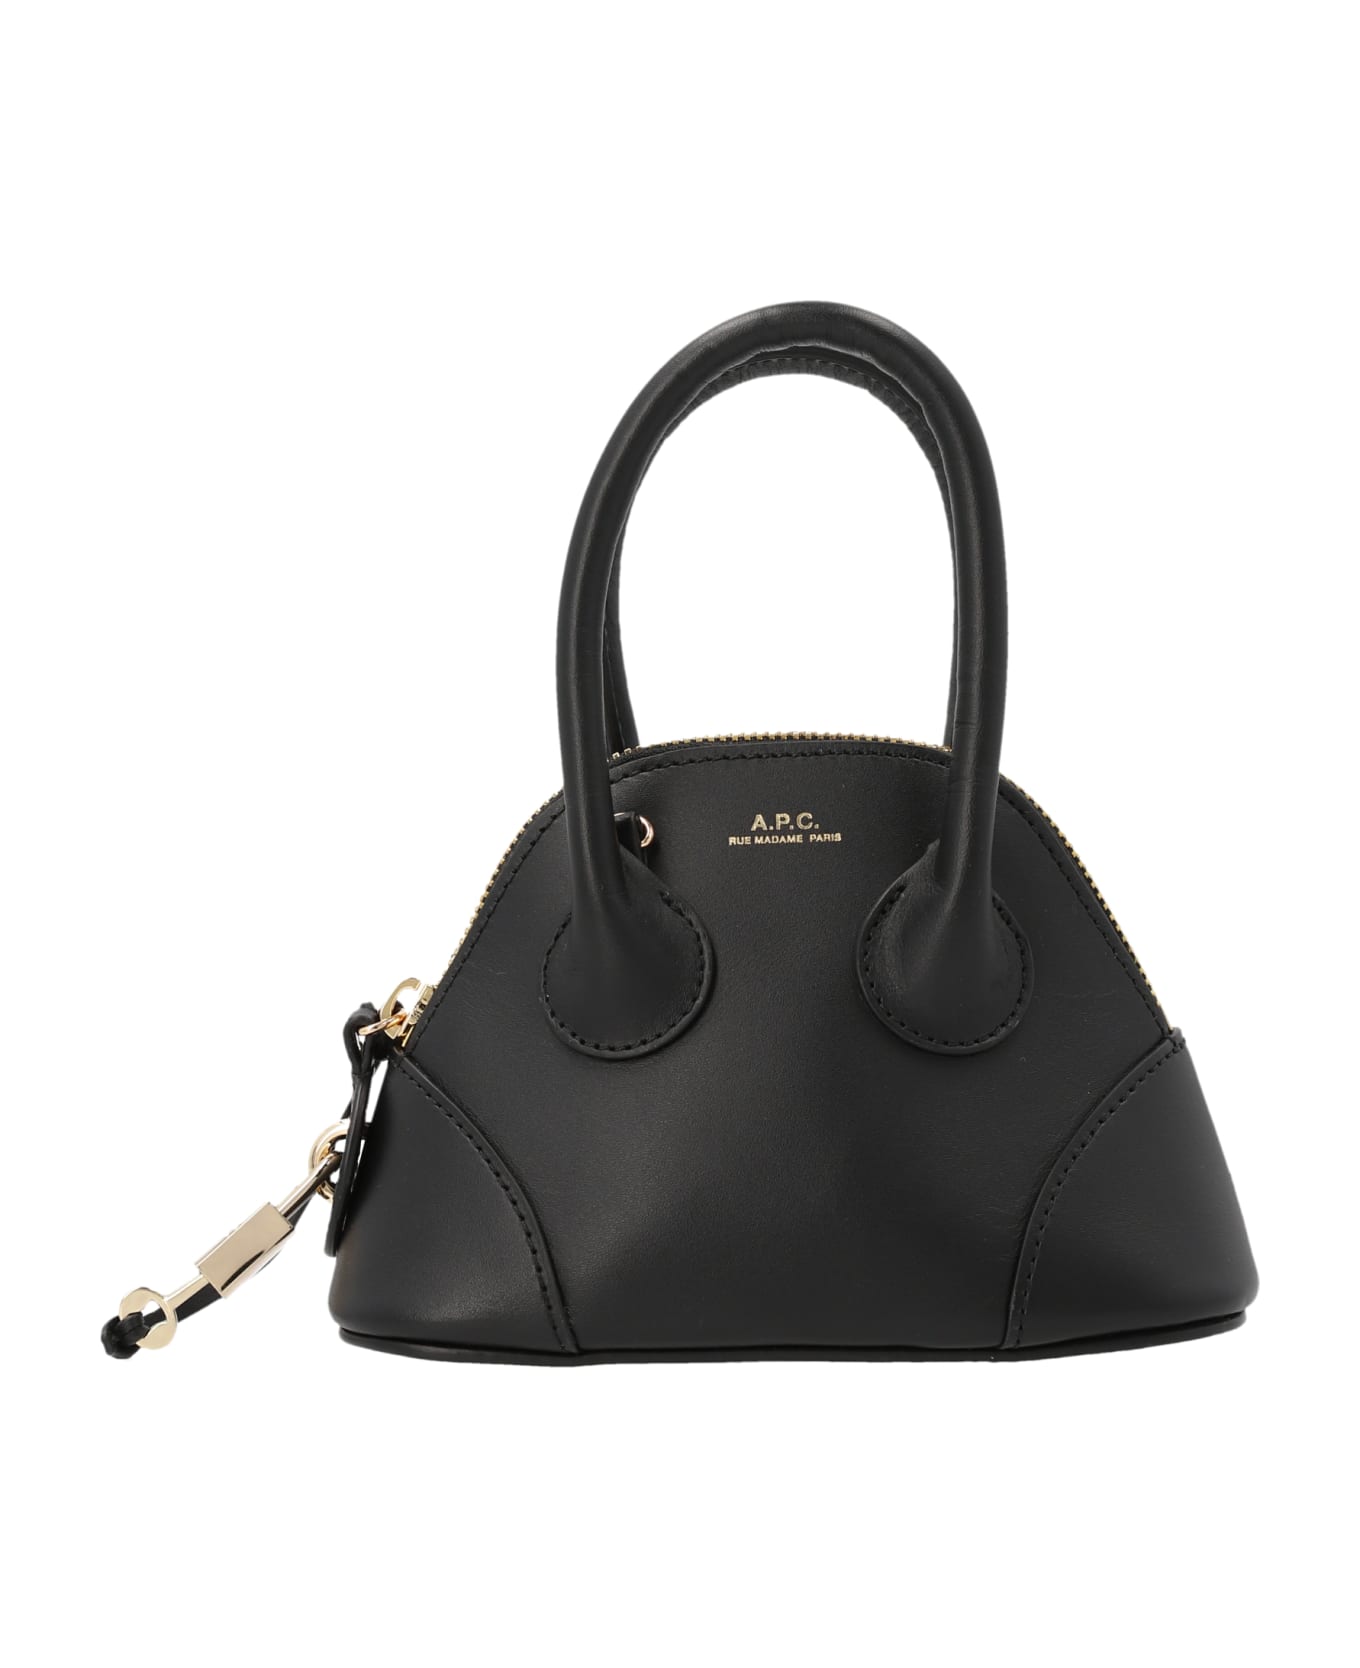 A.P.C. Emma Mini Handbag - BLACK